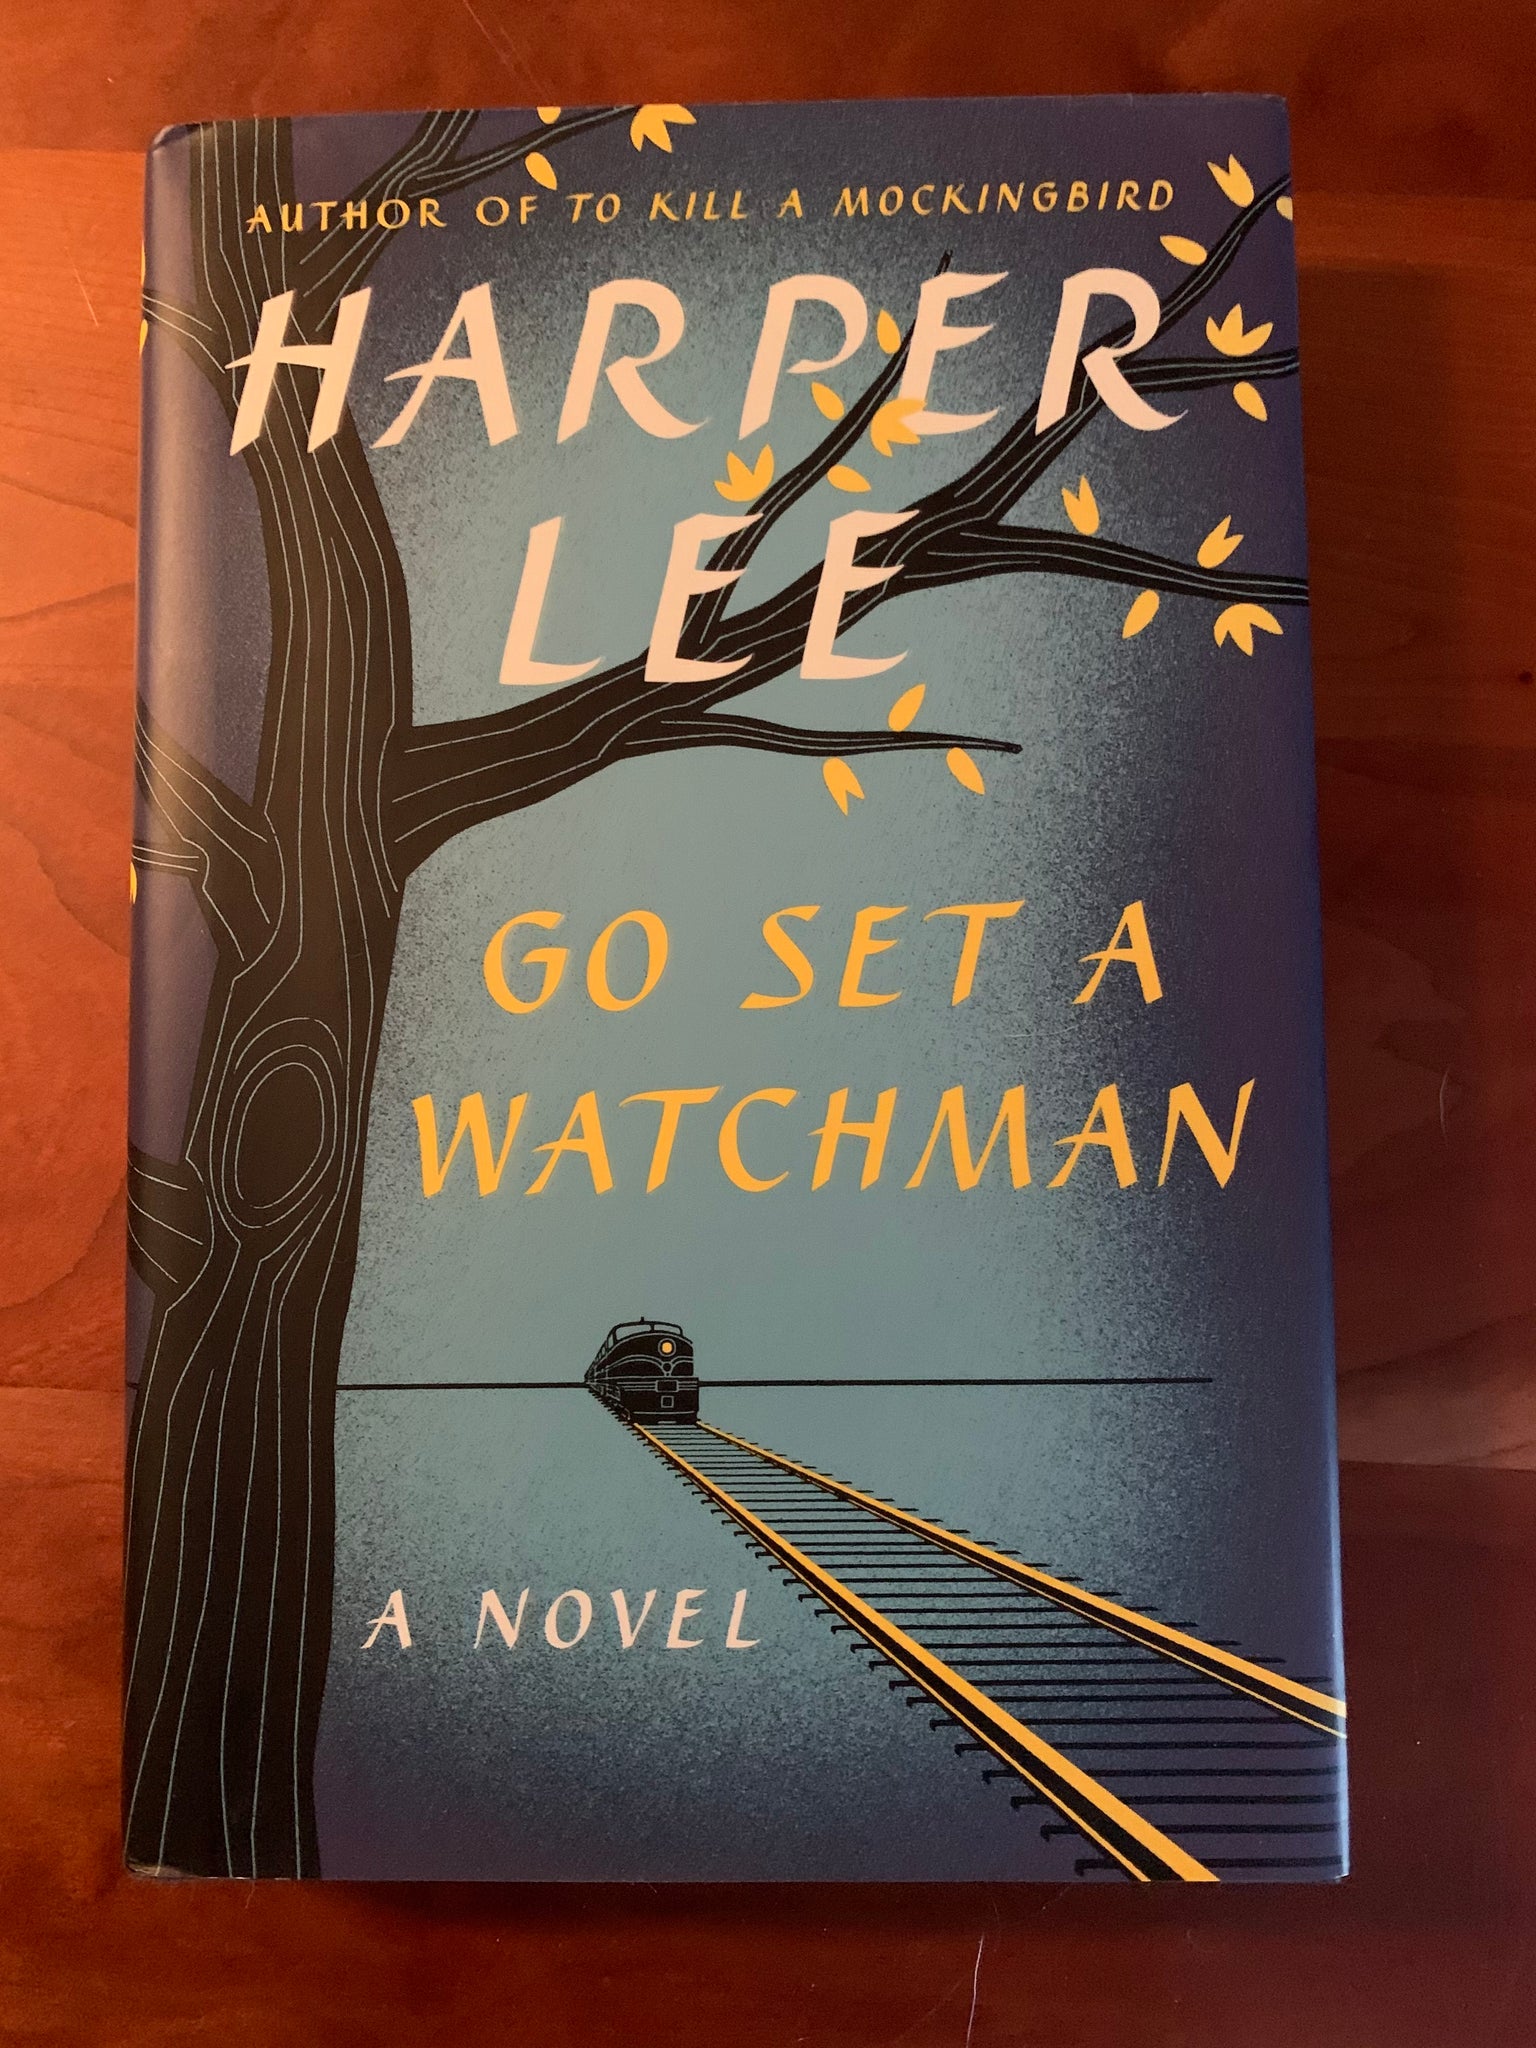 Go Set a Watchman: A Novel